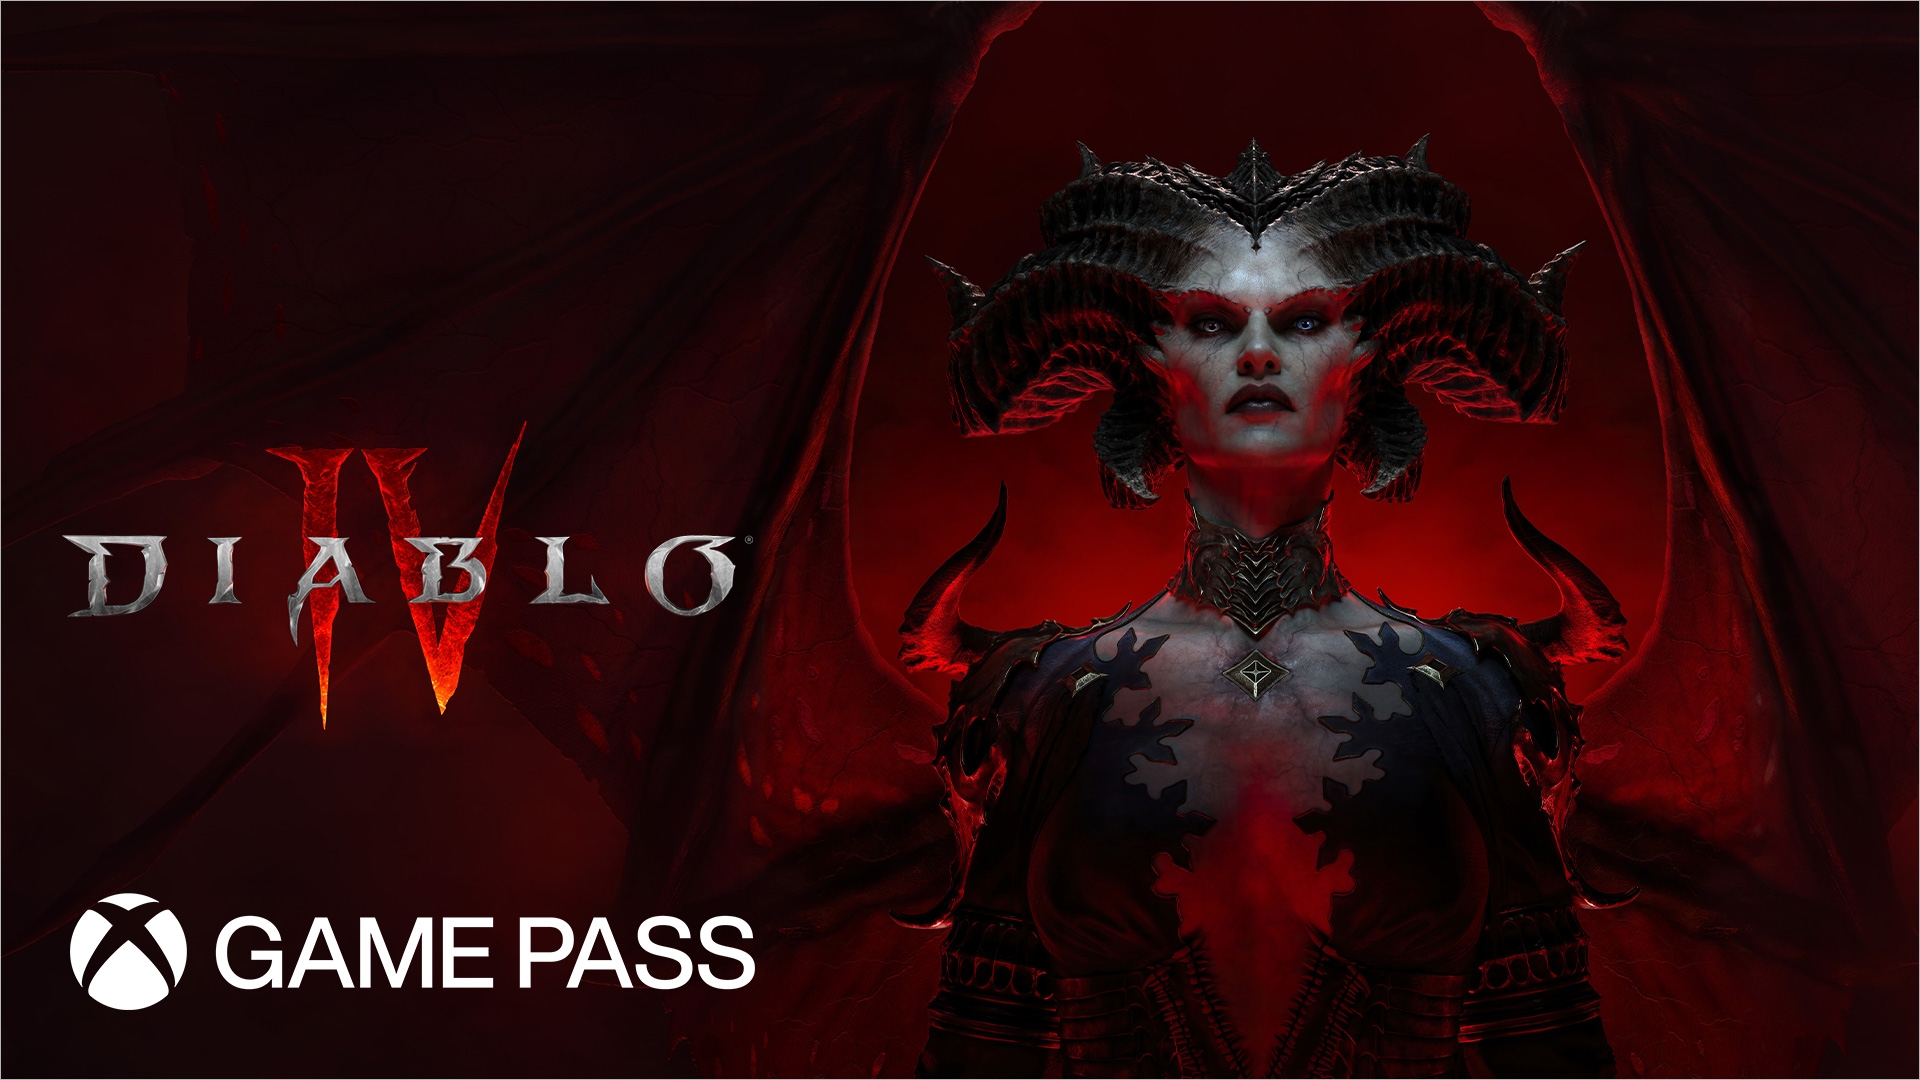  Diablo IV arriva su Xbox Game Pass dal 28 marzo